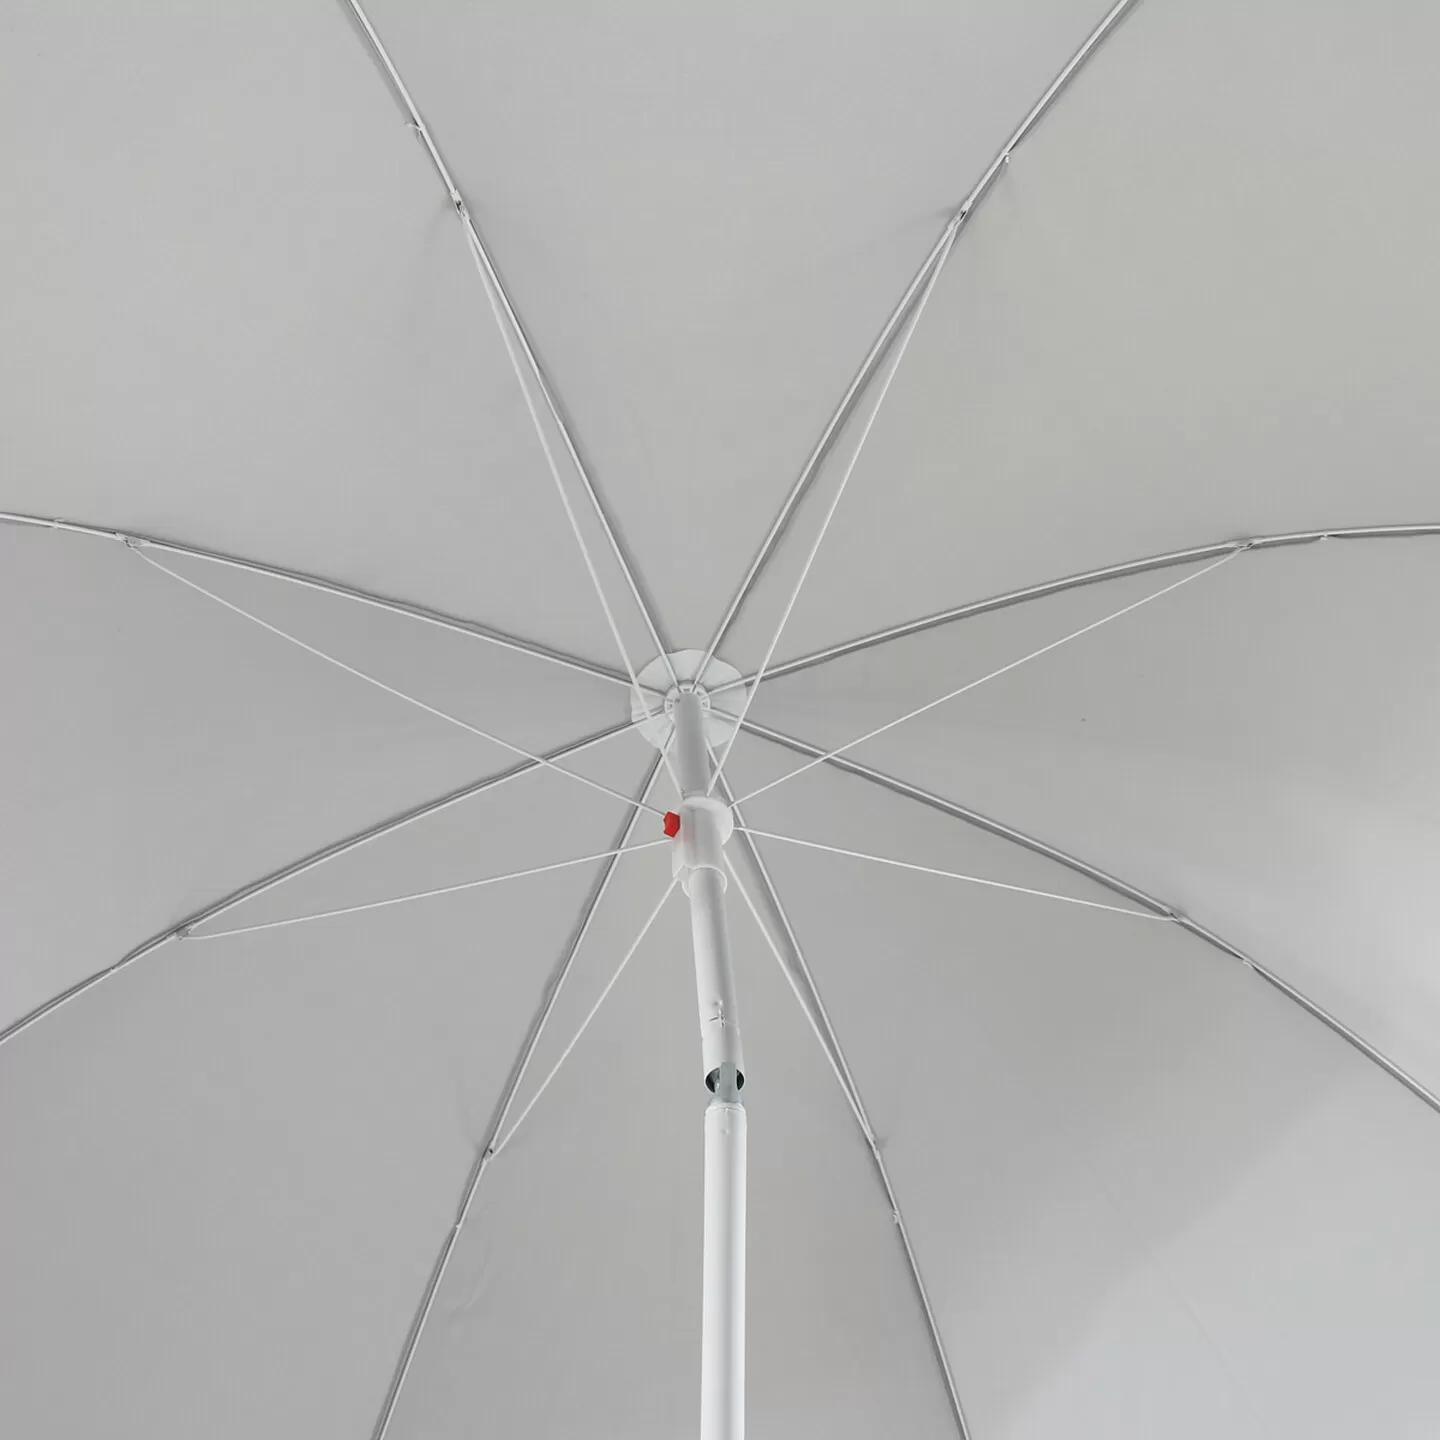 Sunfun Provence II Şemsiye Açık Gri 200 cm - Thumbnail